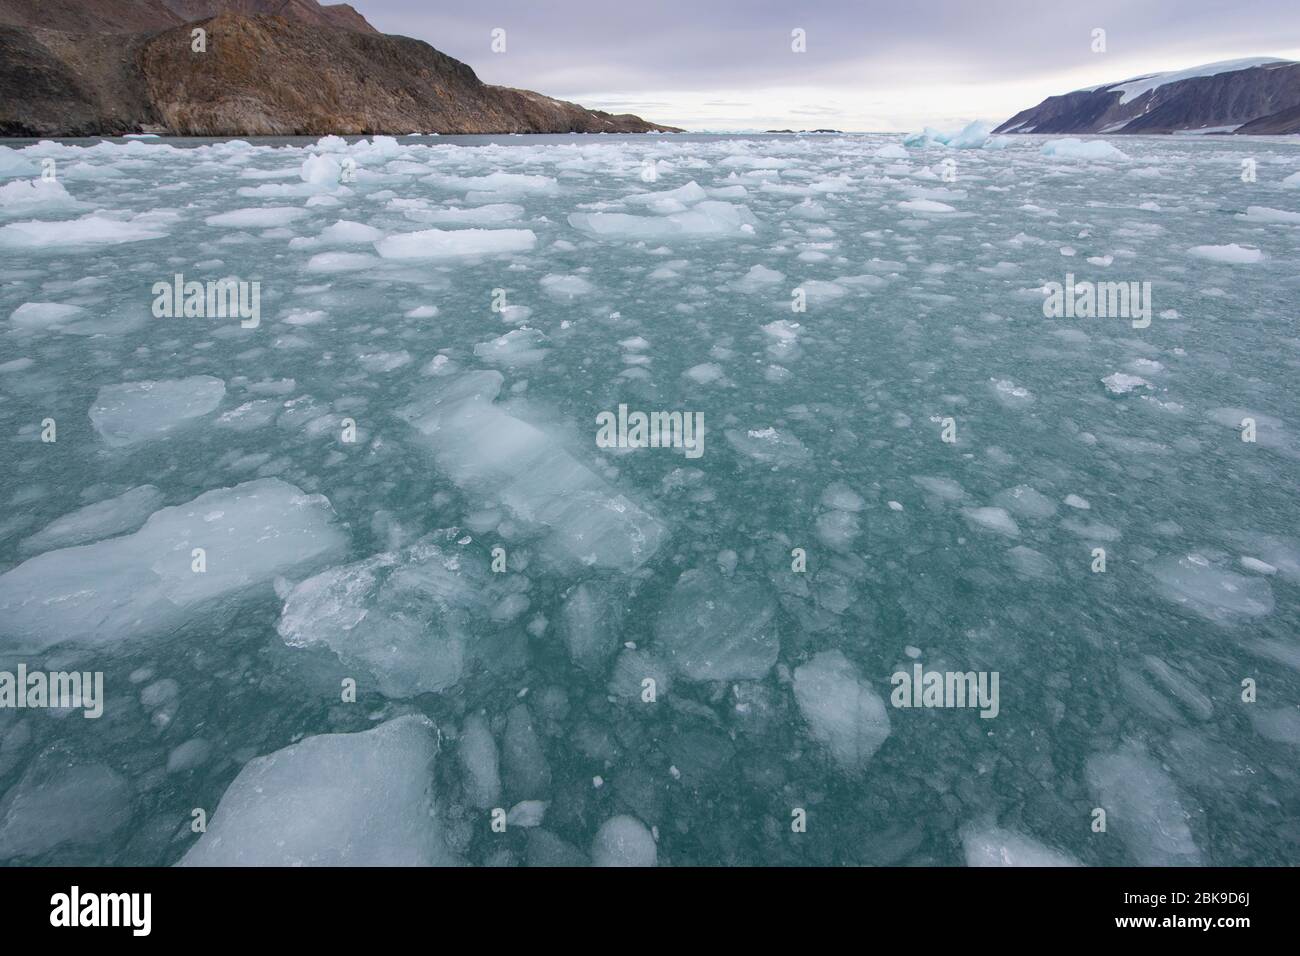 Sea of ice Stock Photo